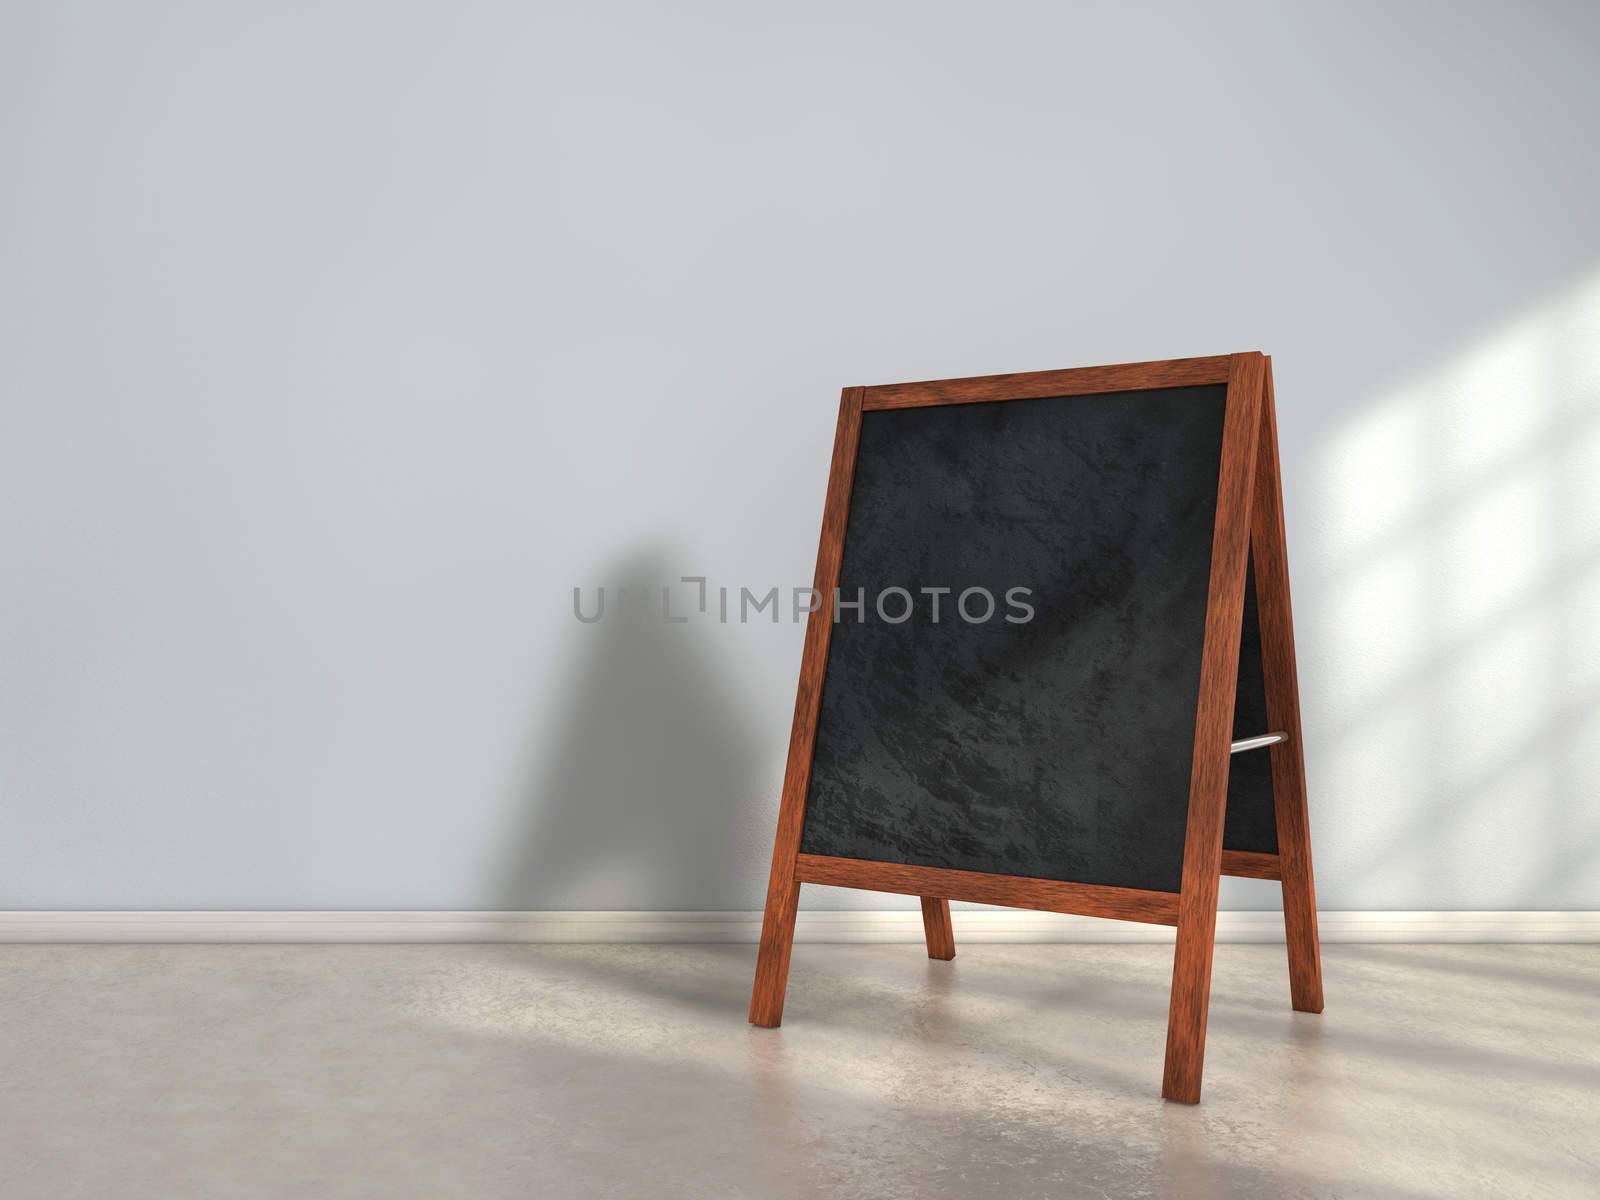 Blackboard menu inside a room